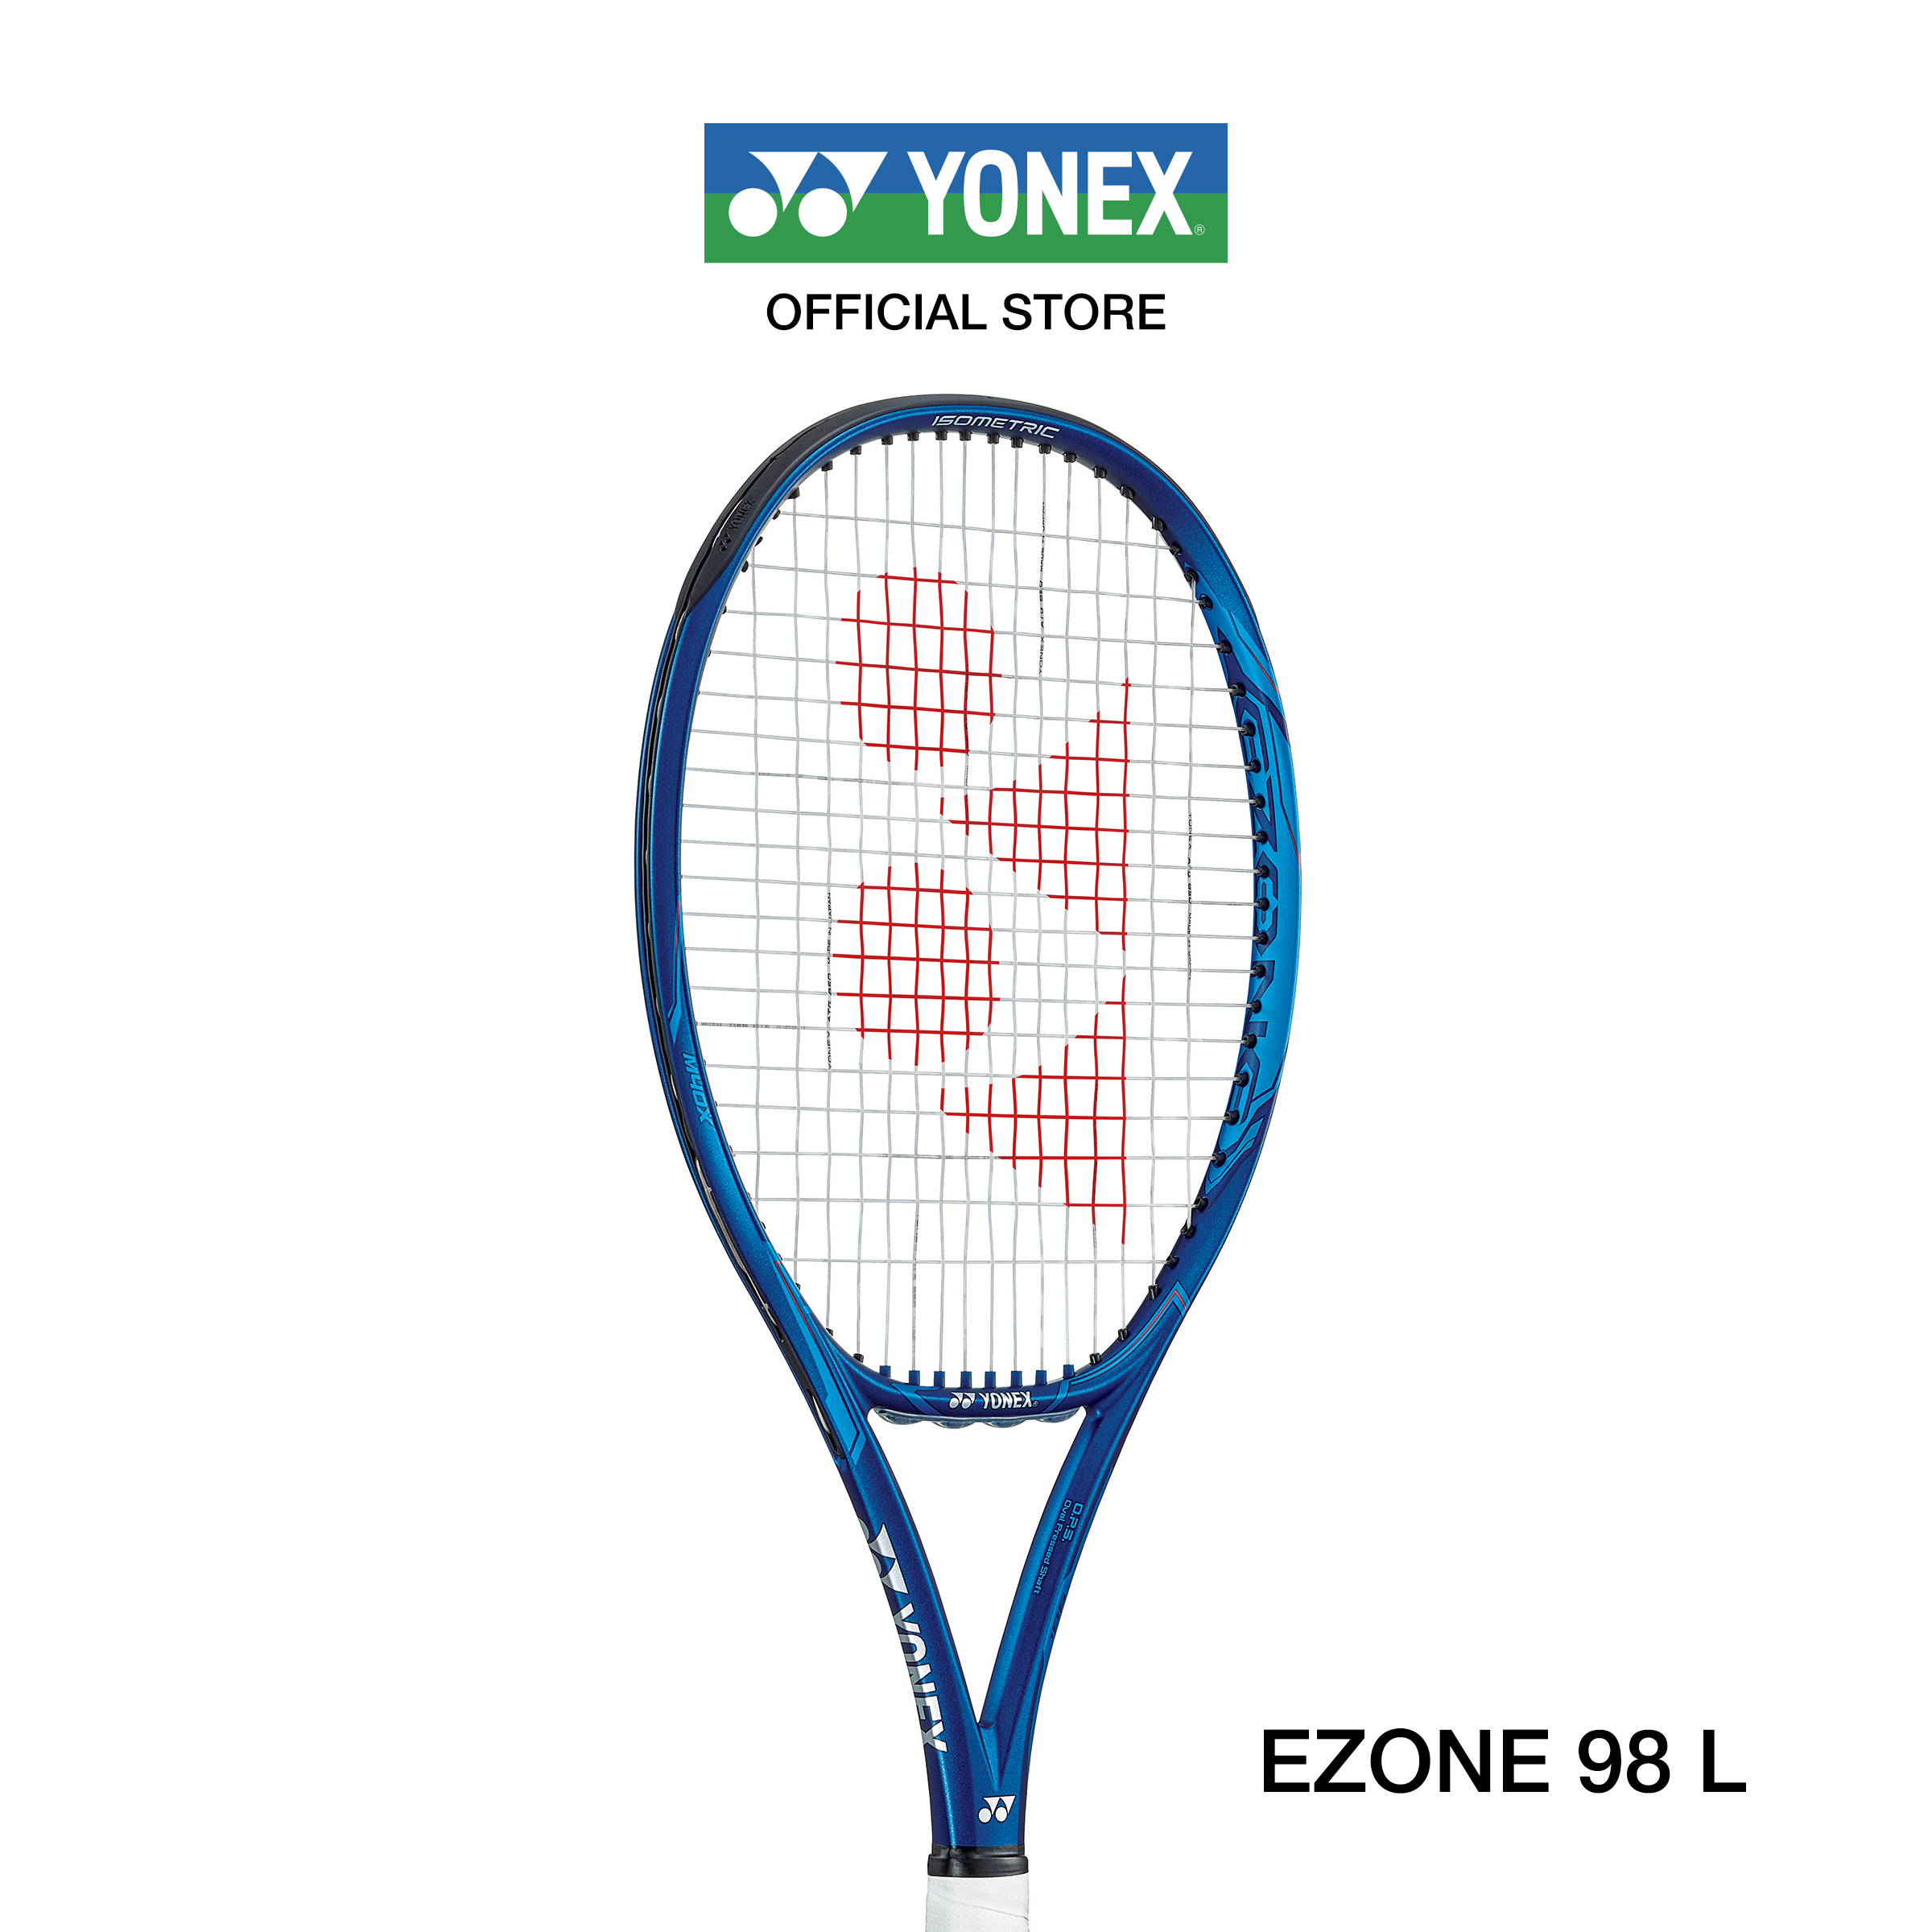 YONEX ไม้เทนนิส รุ่น EZONE 98L (2020) น้ำหนัก 285 กรัม กริป G2  ไม้เทนนิสสายพลัง ช่วยในการควบคุมพลังและให้ความรู้สึกที่นุ่มนวล แถมเอ็น PTGP125